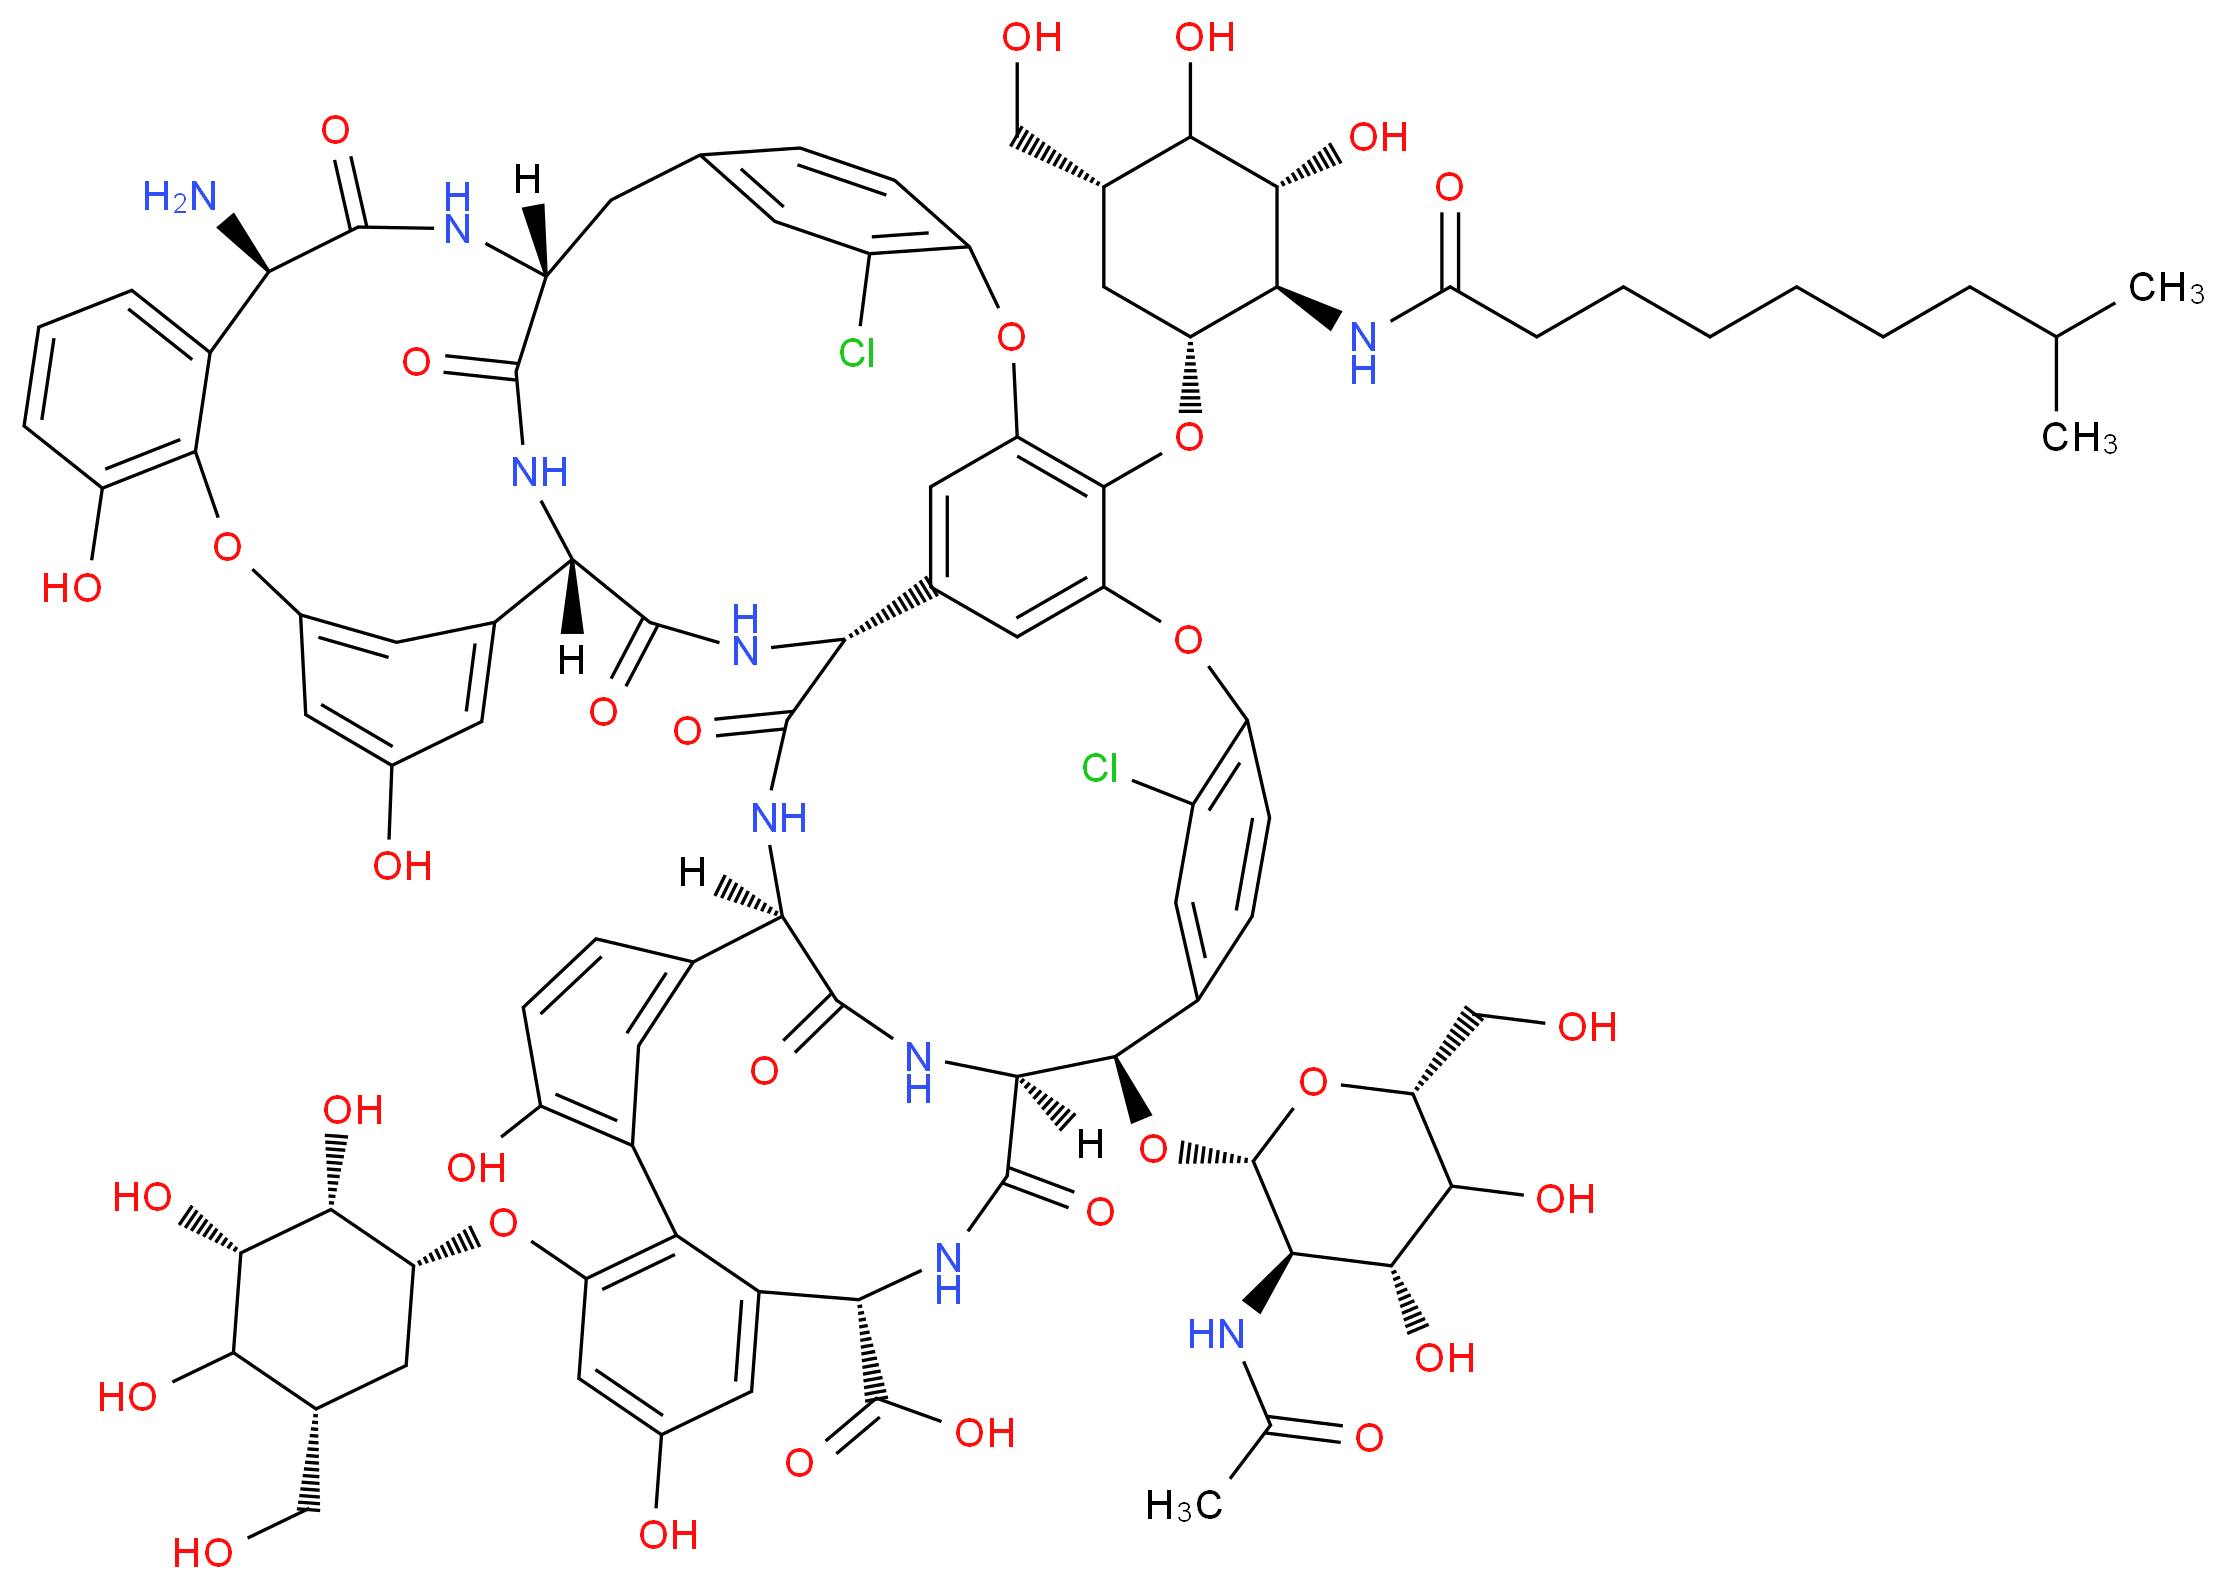 (1R,18R,19S,22S,34R,37R,40S,53R)-53-amino-5,15-dichloro-64-{[(1R,2R,3R,5R)-3,4-dihydroxy-5-(hydroxymethyl)-2-(8-methylnonanamido)cyclohexyl]oxy}-18-{[(2R,3R,4R,6R)-3-acetamido-4,5-dihydroxy-6-(hydroxymethyl)oxan-2-yl]oxy}-25,30,43,48-tetrahydroxy-20,36,39,54,56,59-hexaoxo-27-{[(1R,2S,3S,5R)-2,3,4-trihydroxy-5-(hydroxymethyl)cyclohexyl]oxy}-7,13,46-trioxa-21,35,38,55,57,60-hexaazaundecacyclo[38.15.2.2<sup>3</sup>,<sup>6</sup>.2<sup>1</sup><sup>4</sup>,<sup>1</sup><sup>7</sup>.2<sup>1</sup><sup>9</sup>,<sup>3</sup><sup>4</sup>.1<sup>8</sup>,<sup>1</sup><sup>2</sup>.1<sup>2</sup><sup>9</sup>,<sup>3</sup><sup>3</sup>.1<sup>4</sup><sup>1</sup>,<sup>4</sup><sup>5</sup>.0<sup>1</sup><sup>0</sup>,<sup>3</sup><sup>7</sup>.0<sup>2</sup><sup>3</sup>,<sup>2</sup><sup>8</sup>.0<sup>4</sup><sup>7</sup>,<sup>5</sup><sup>2</sup>]hexahexaconta-3,5,8,10,12(64),14,16,23(28),24,26,29(61),30,32,41(58),42,44,47(52),48,50,62,65-henicosaene-22-carboxylic acid_分子结构_CAS_61036-62-2